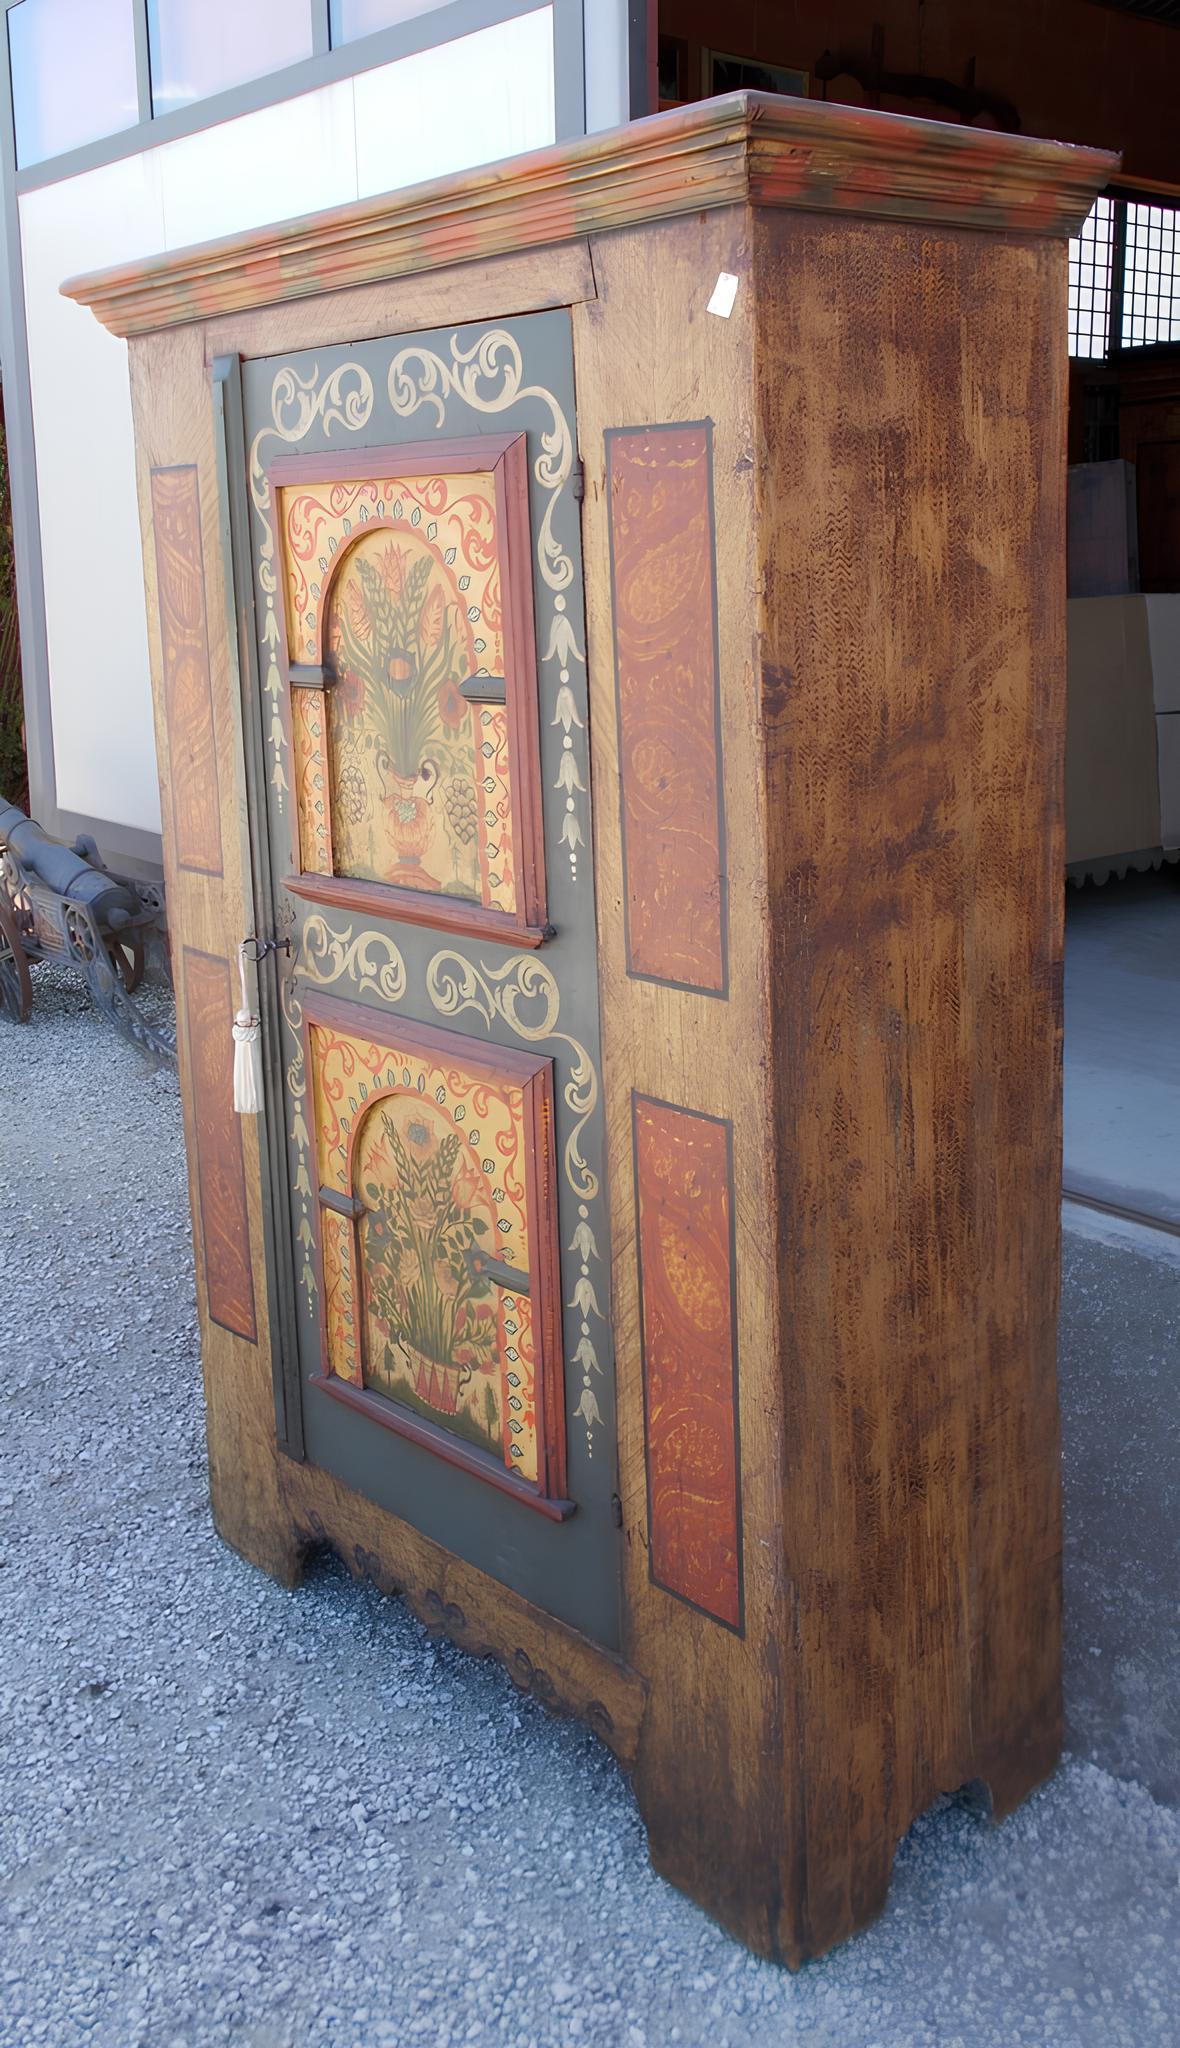 Kleines Schränkchen aus Tannenholz, mit fein gemalter Relieftür.

Originalscharniere aus der Zeit, Schloss ersetzt.
Sie stammt aus der zweiten Hälfte des 18. Jahrhunderts und hat ihren Ursprung im Tiroler Alpenraum.
Sie ist in einem guten